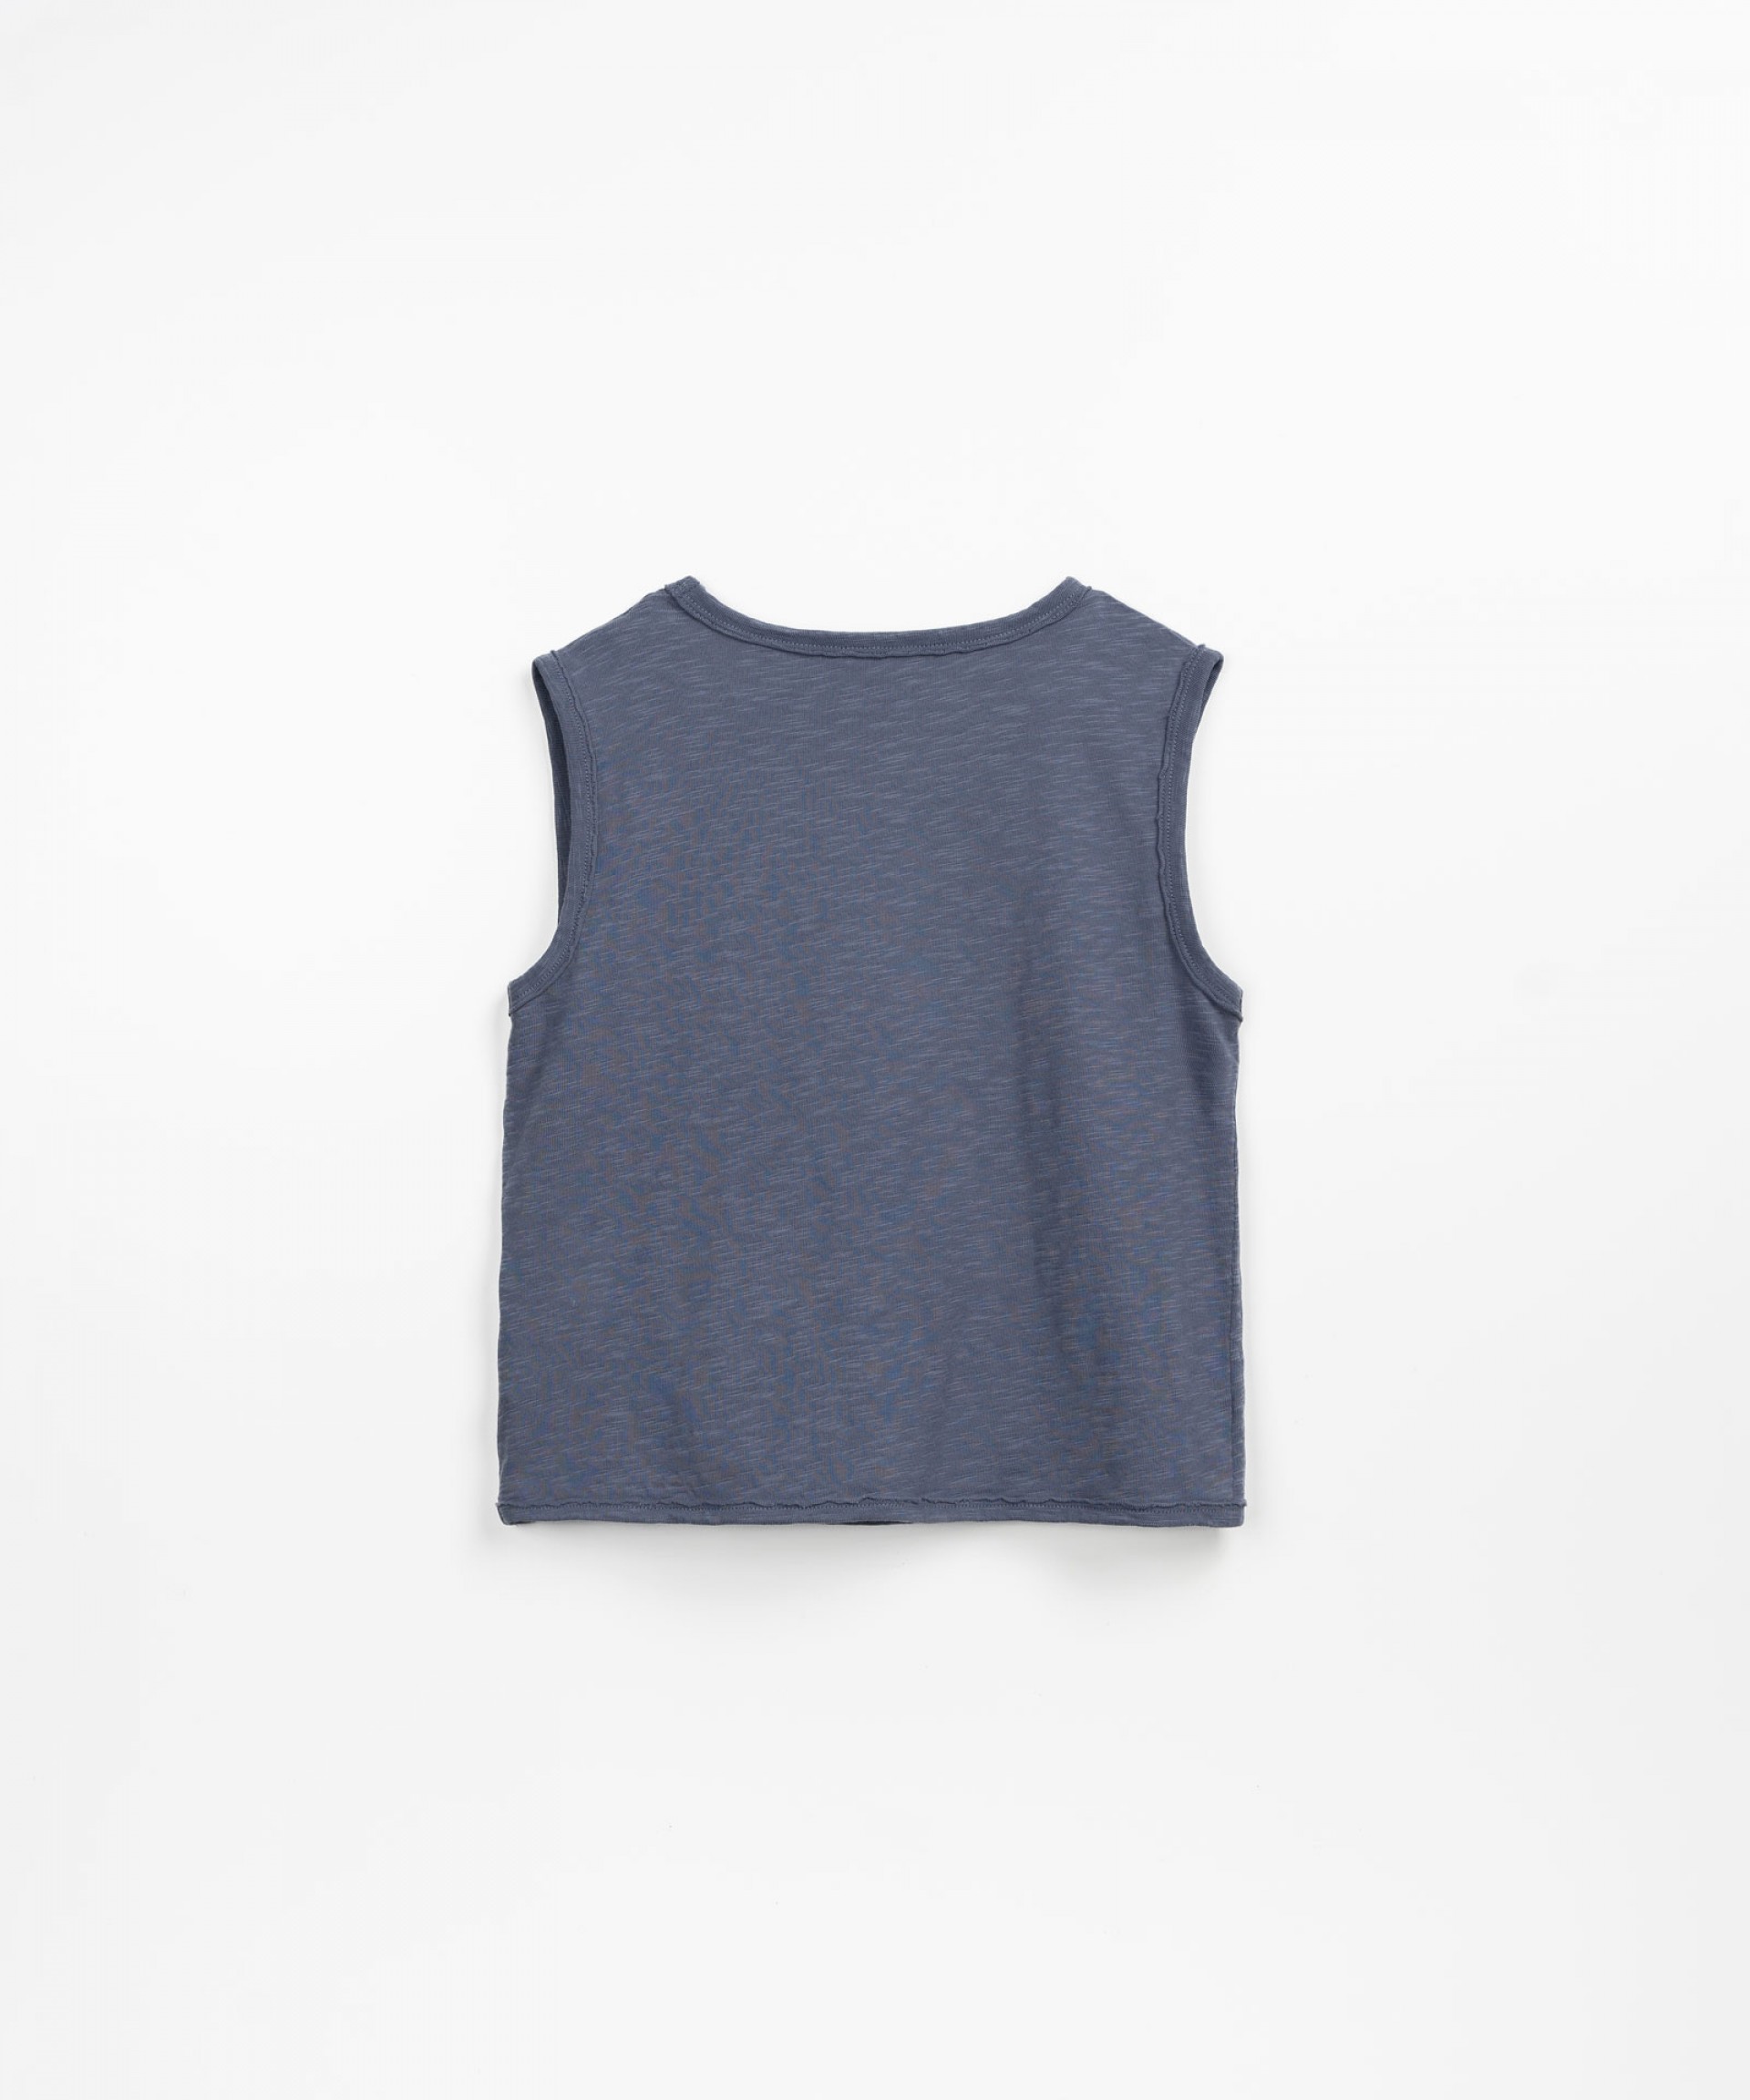 T-shirt sans manches avec une phrase sur la poitrine | Textile Art